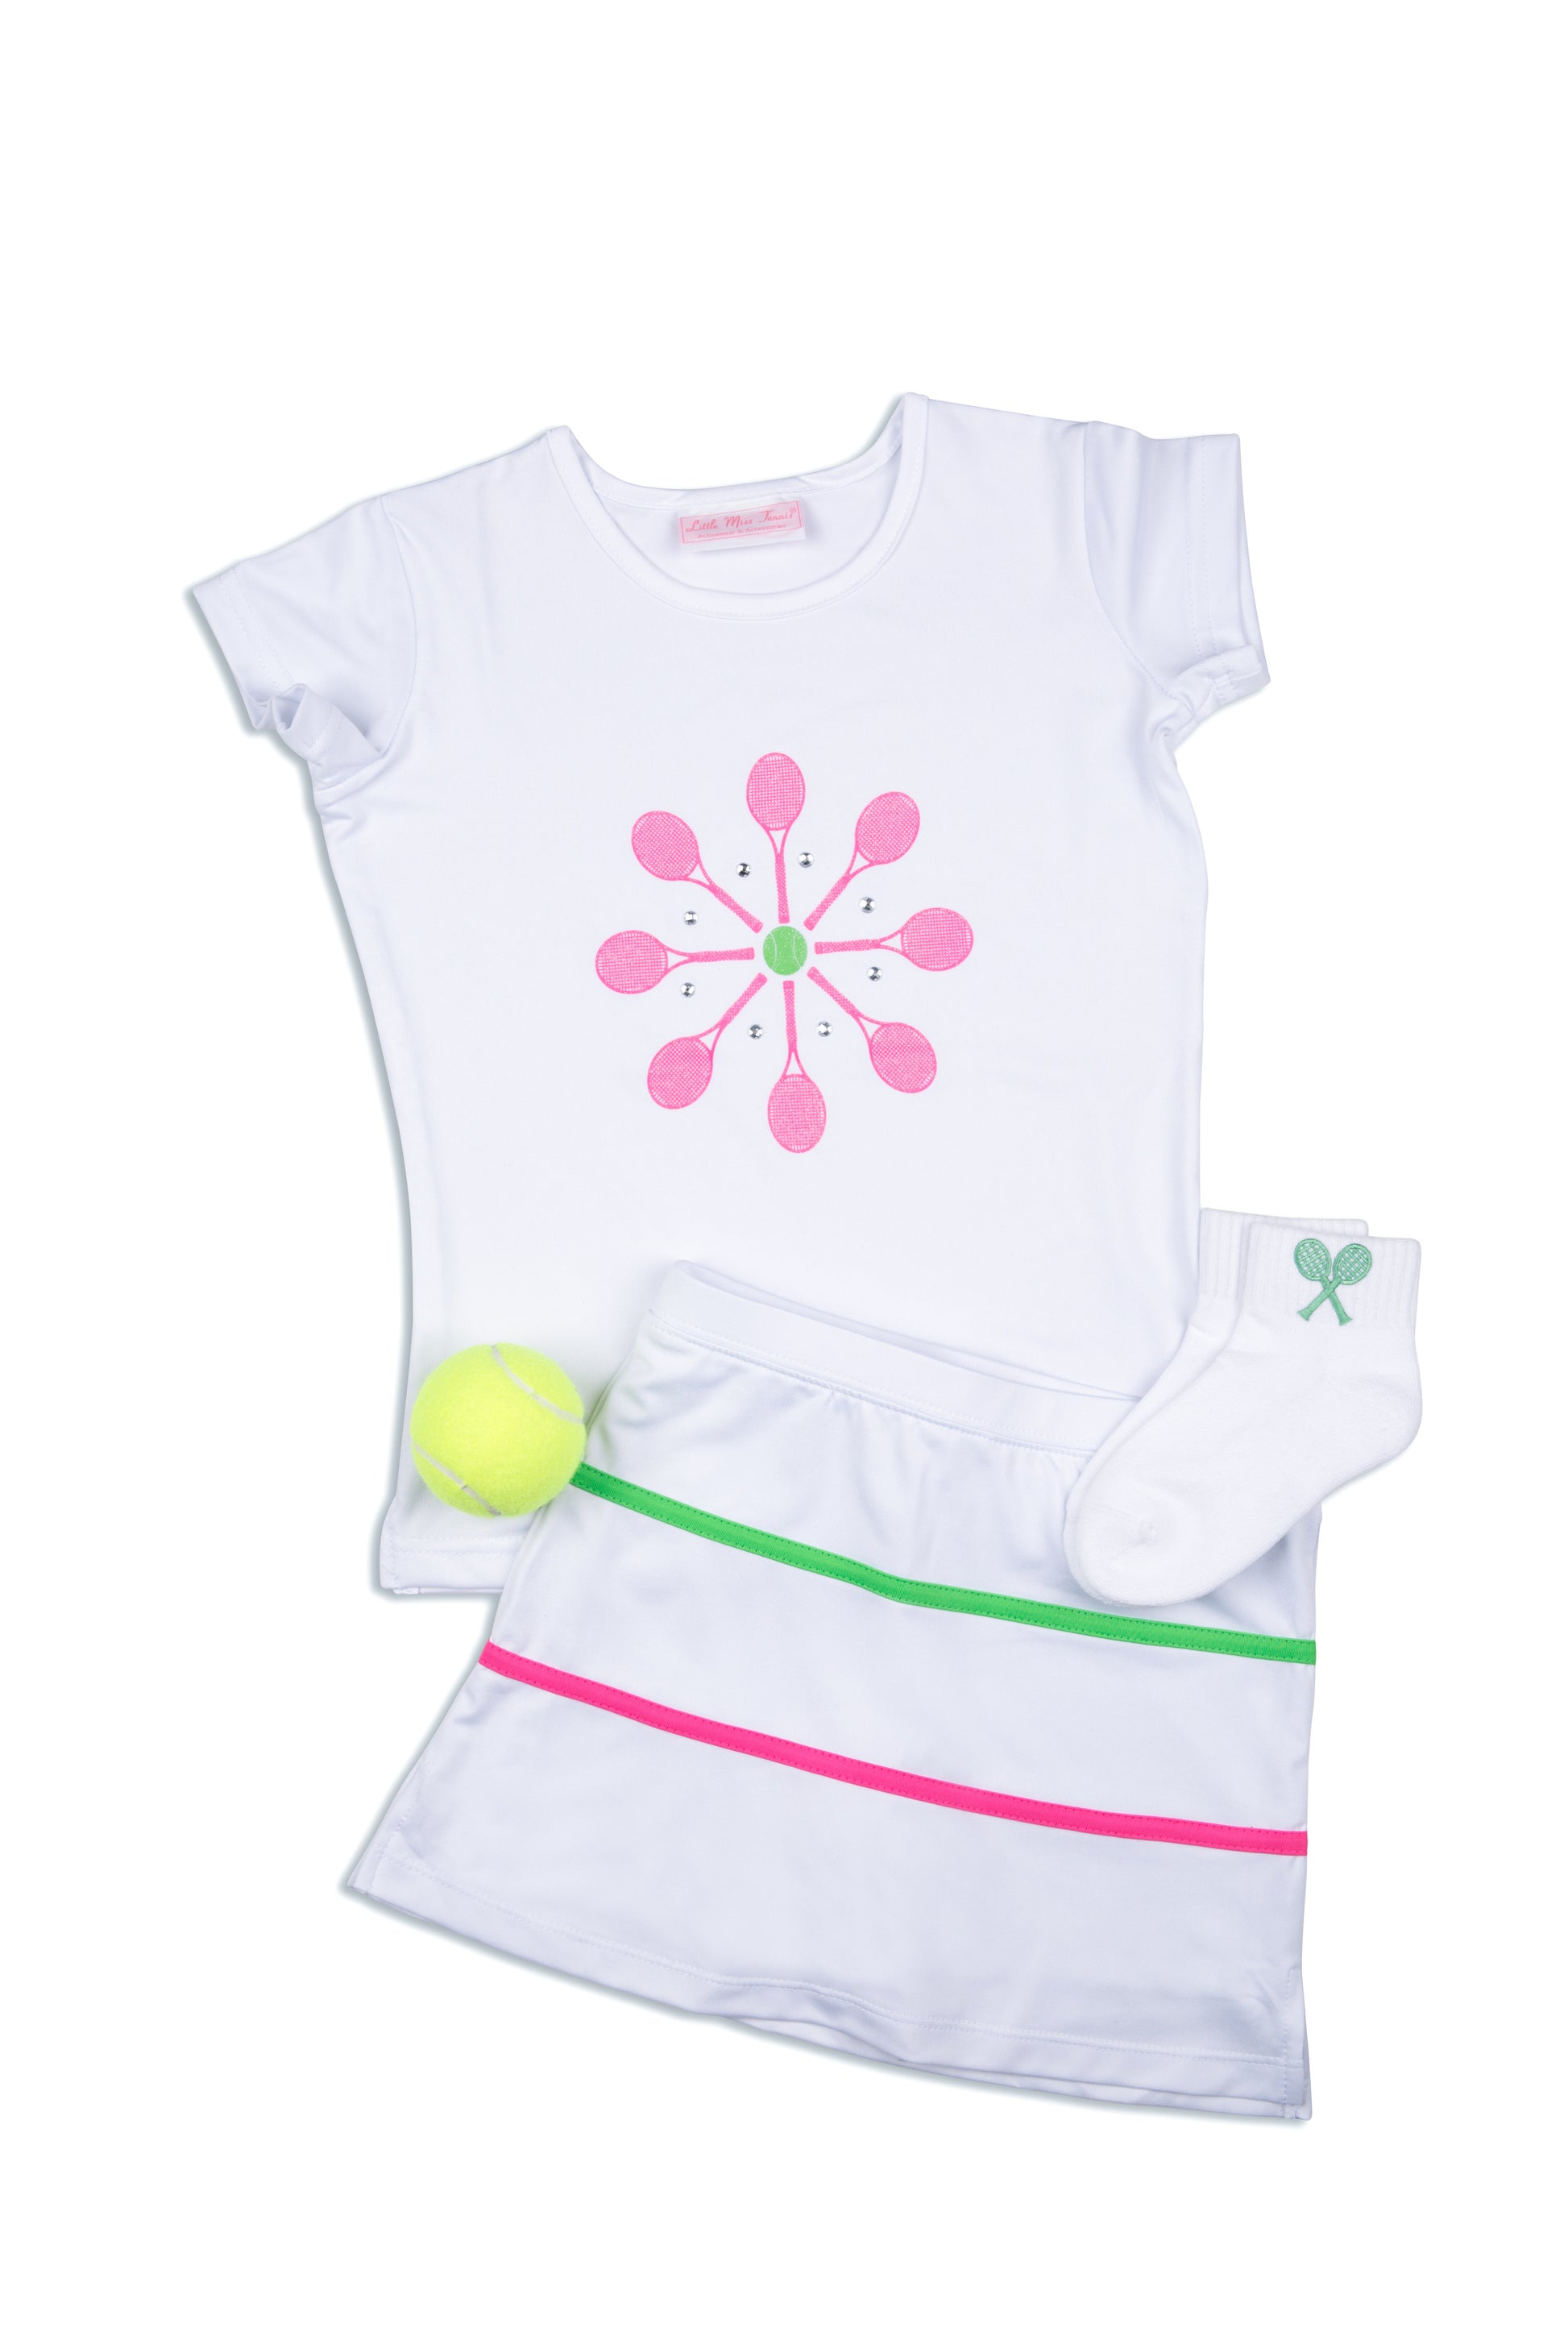 Meadow Lane Tee - Little Miss Tennis